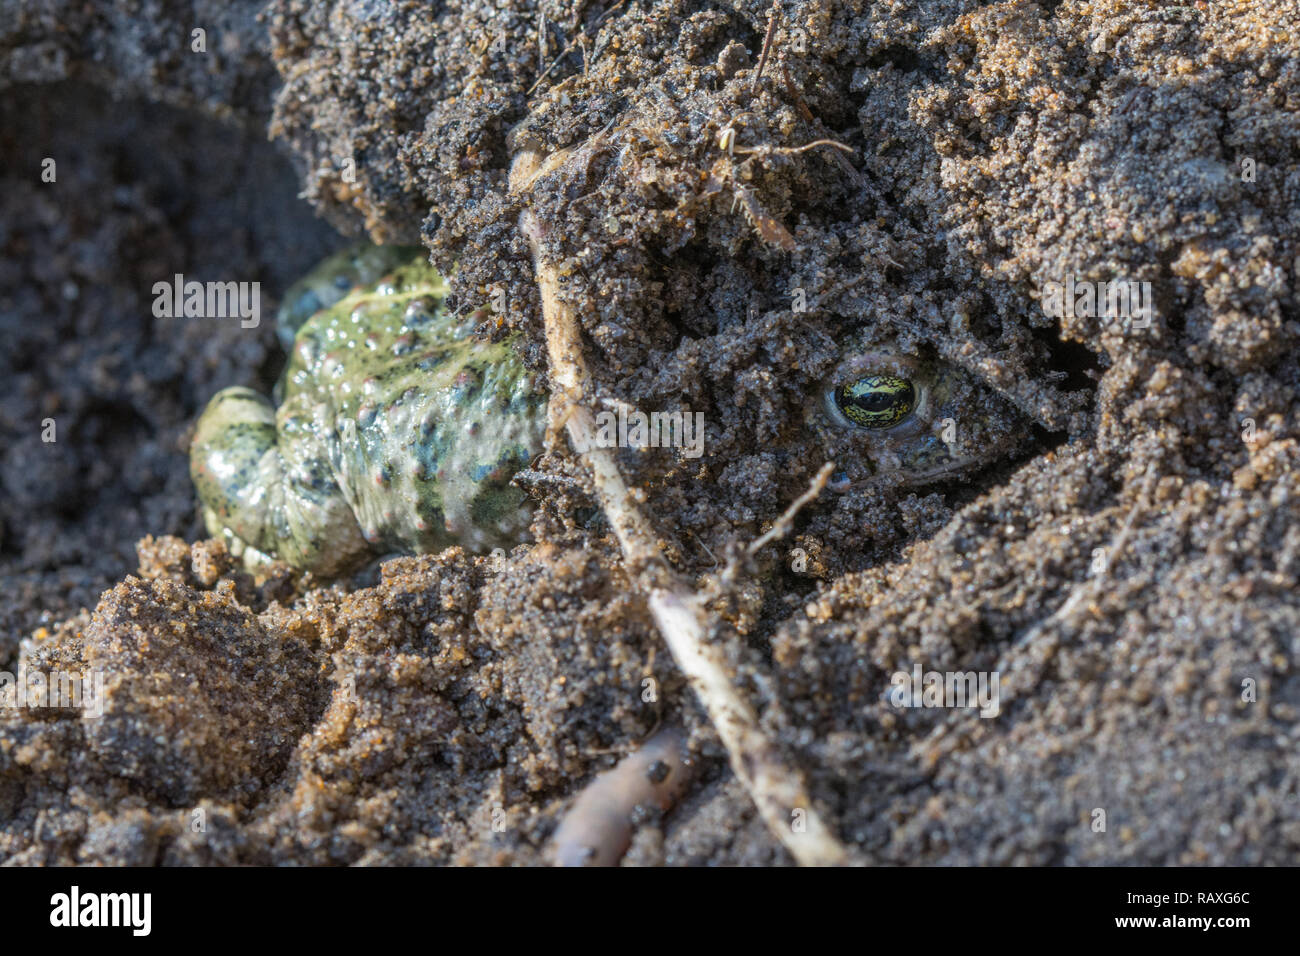 Crapaud calamite (Epidalea calamita) s'enfouissant dans le sable au bord de la lande dans le Hampshire, au Royaume-Uni Banque D'Images